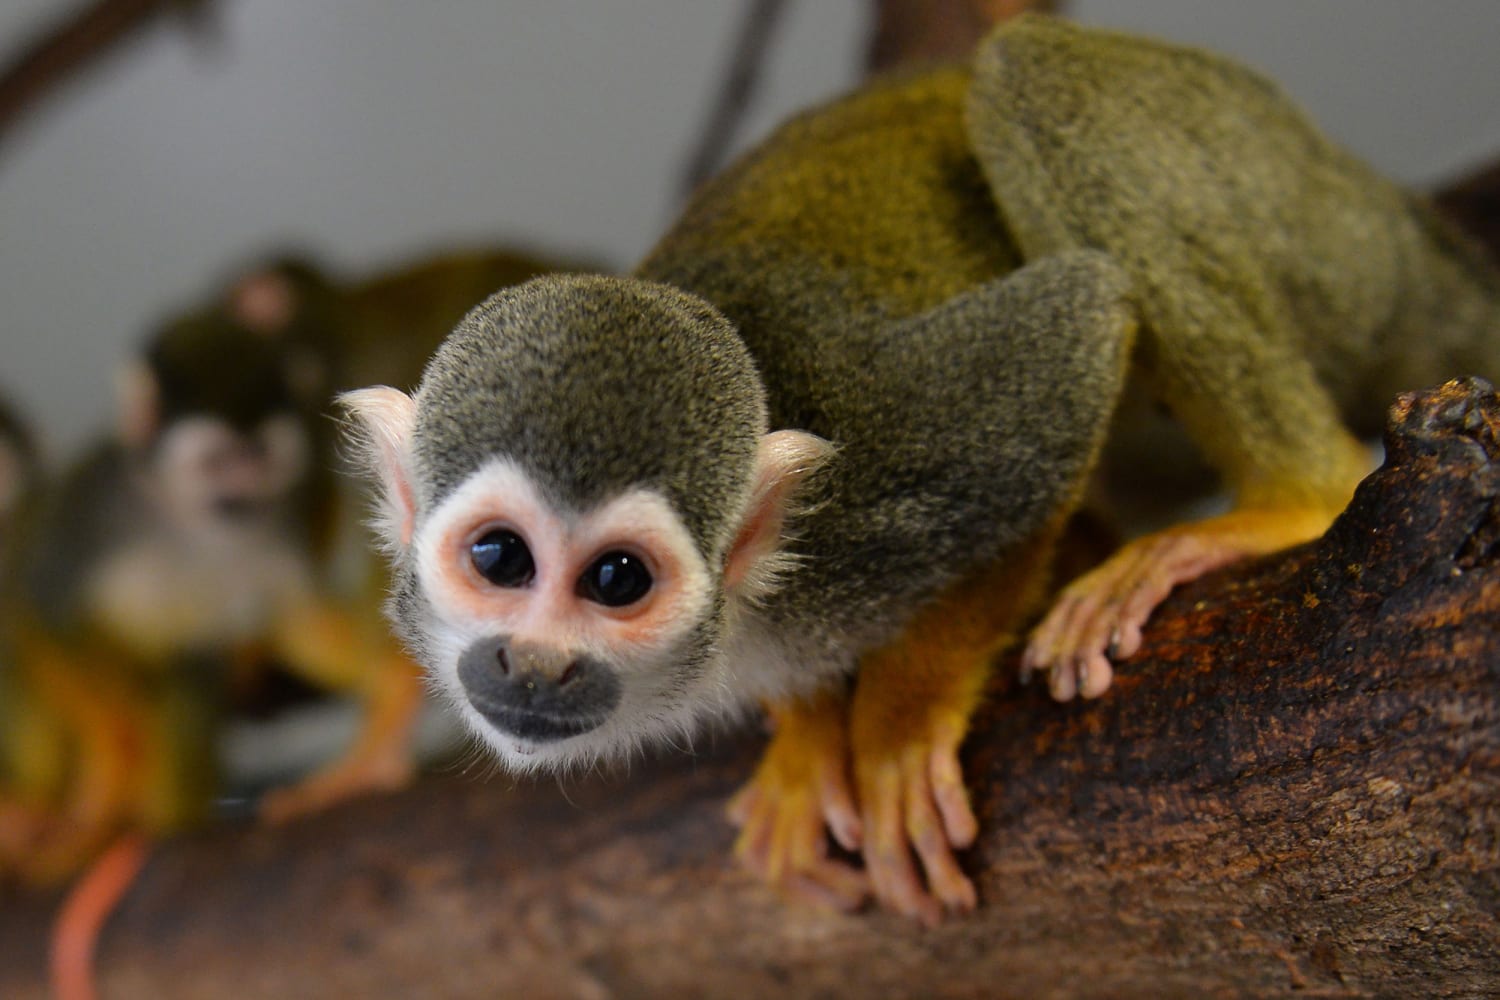 A dozen squirrel monkeys were stolen from a Louisiana zoo, officials say